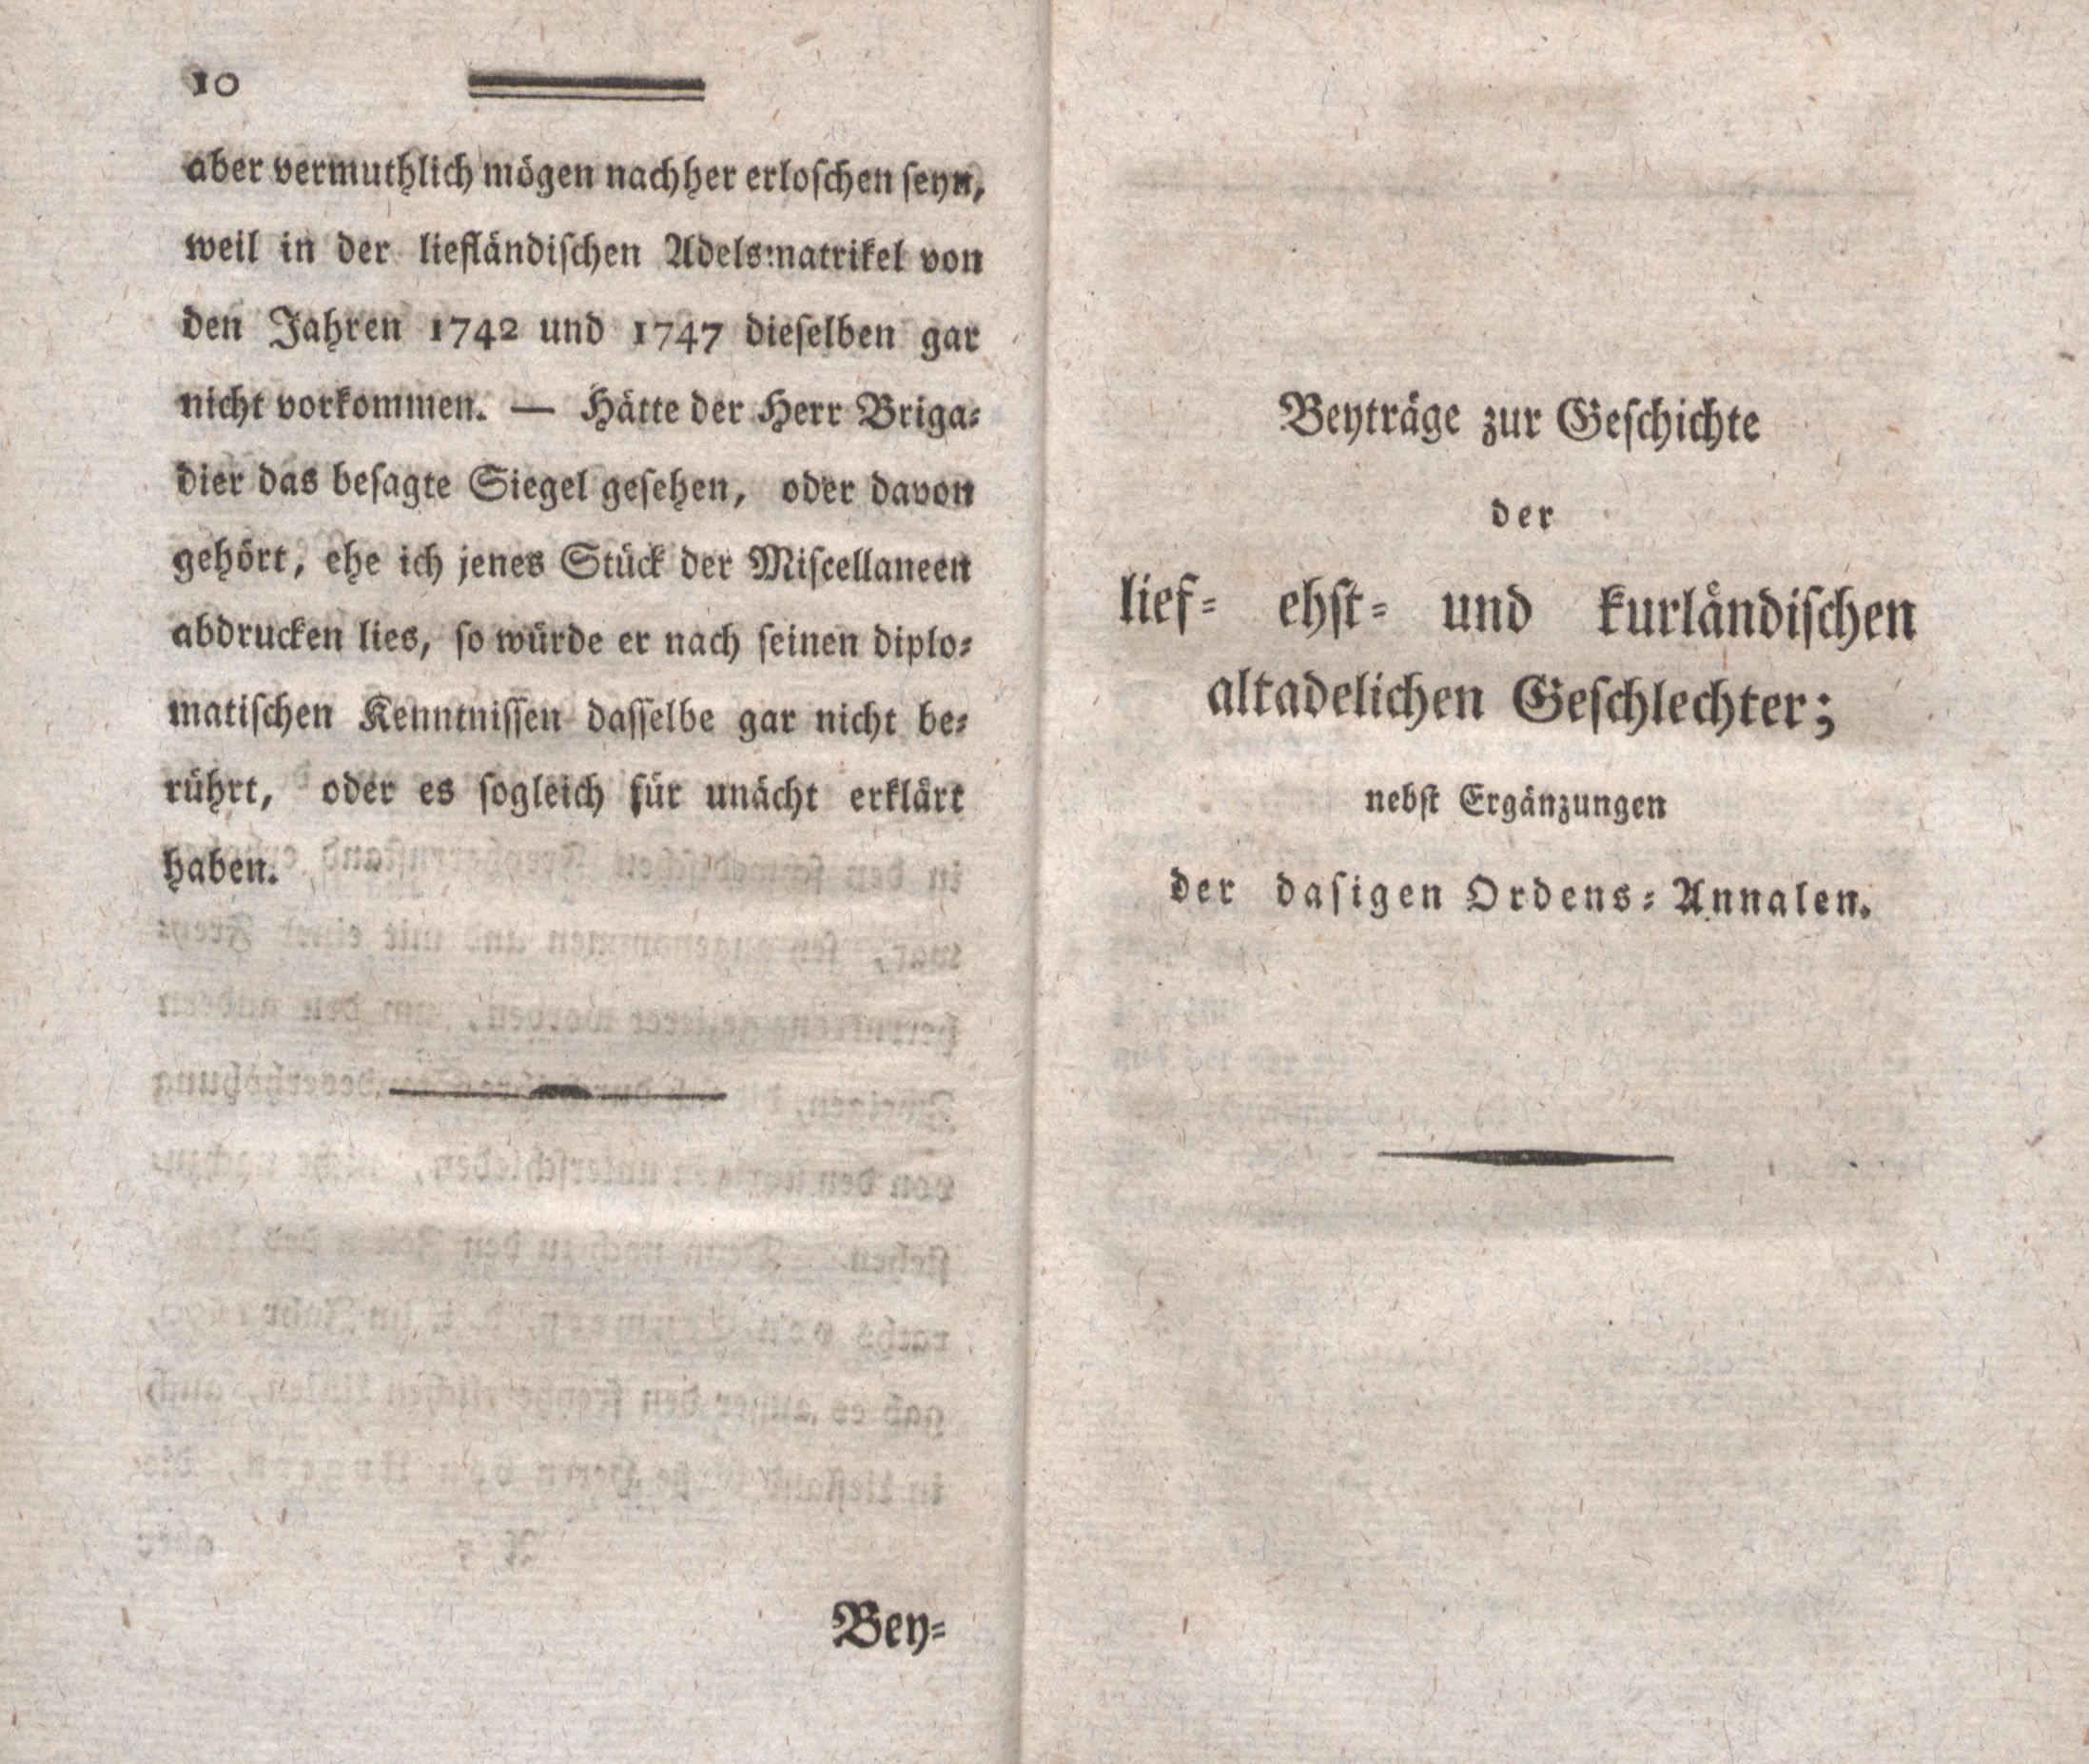 Beyträge zur Geschichte der lief-, ehst- und kurländischen altadelichen Geschlechter (1794) | 1. (10-11) Foreword, Main body of text